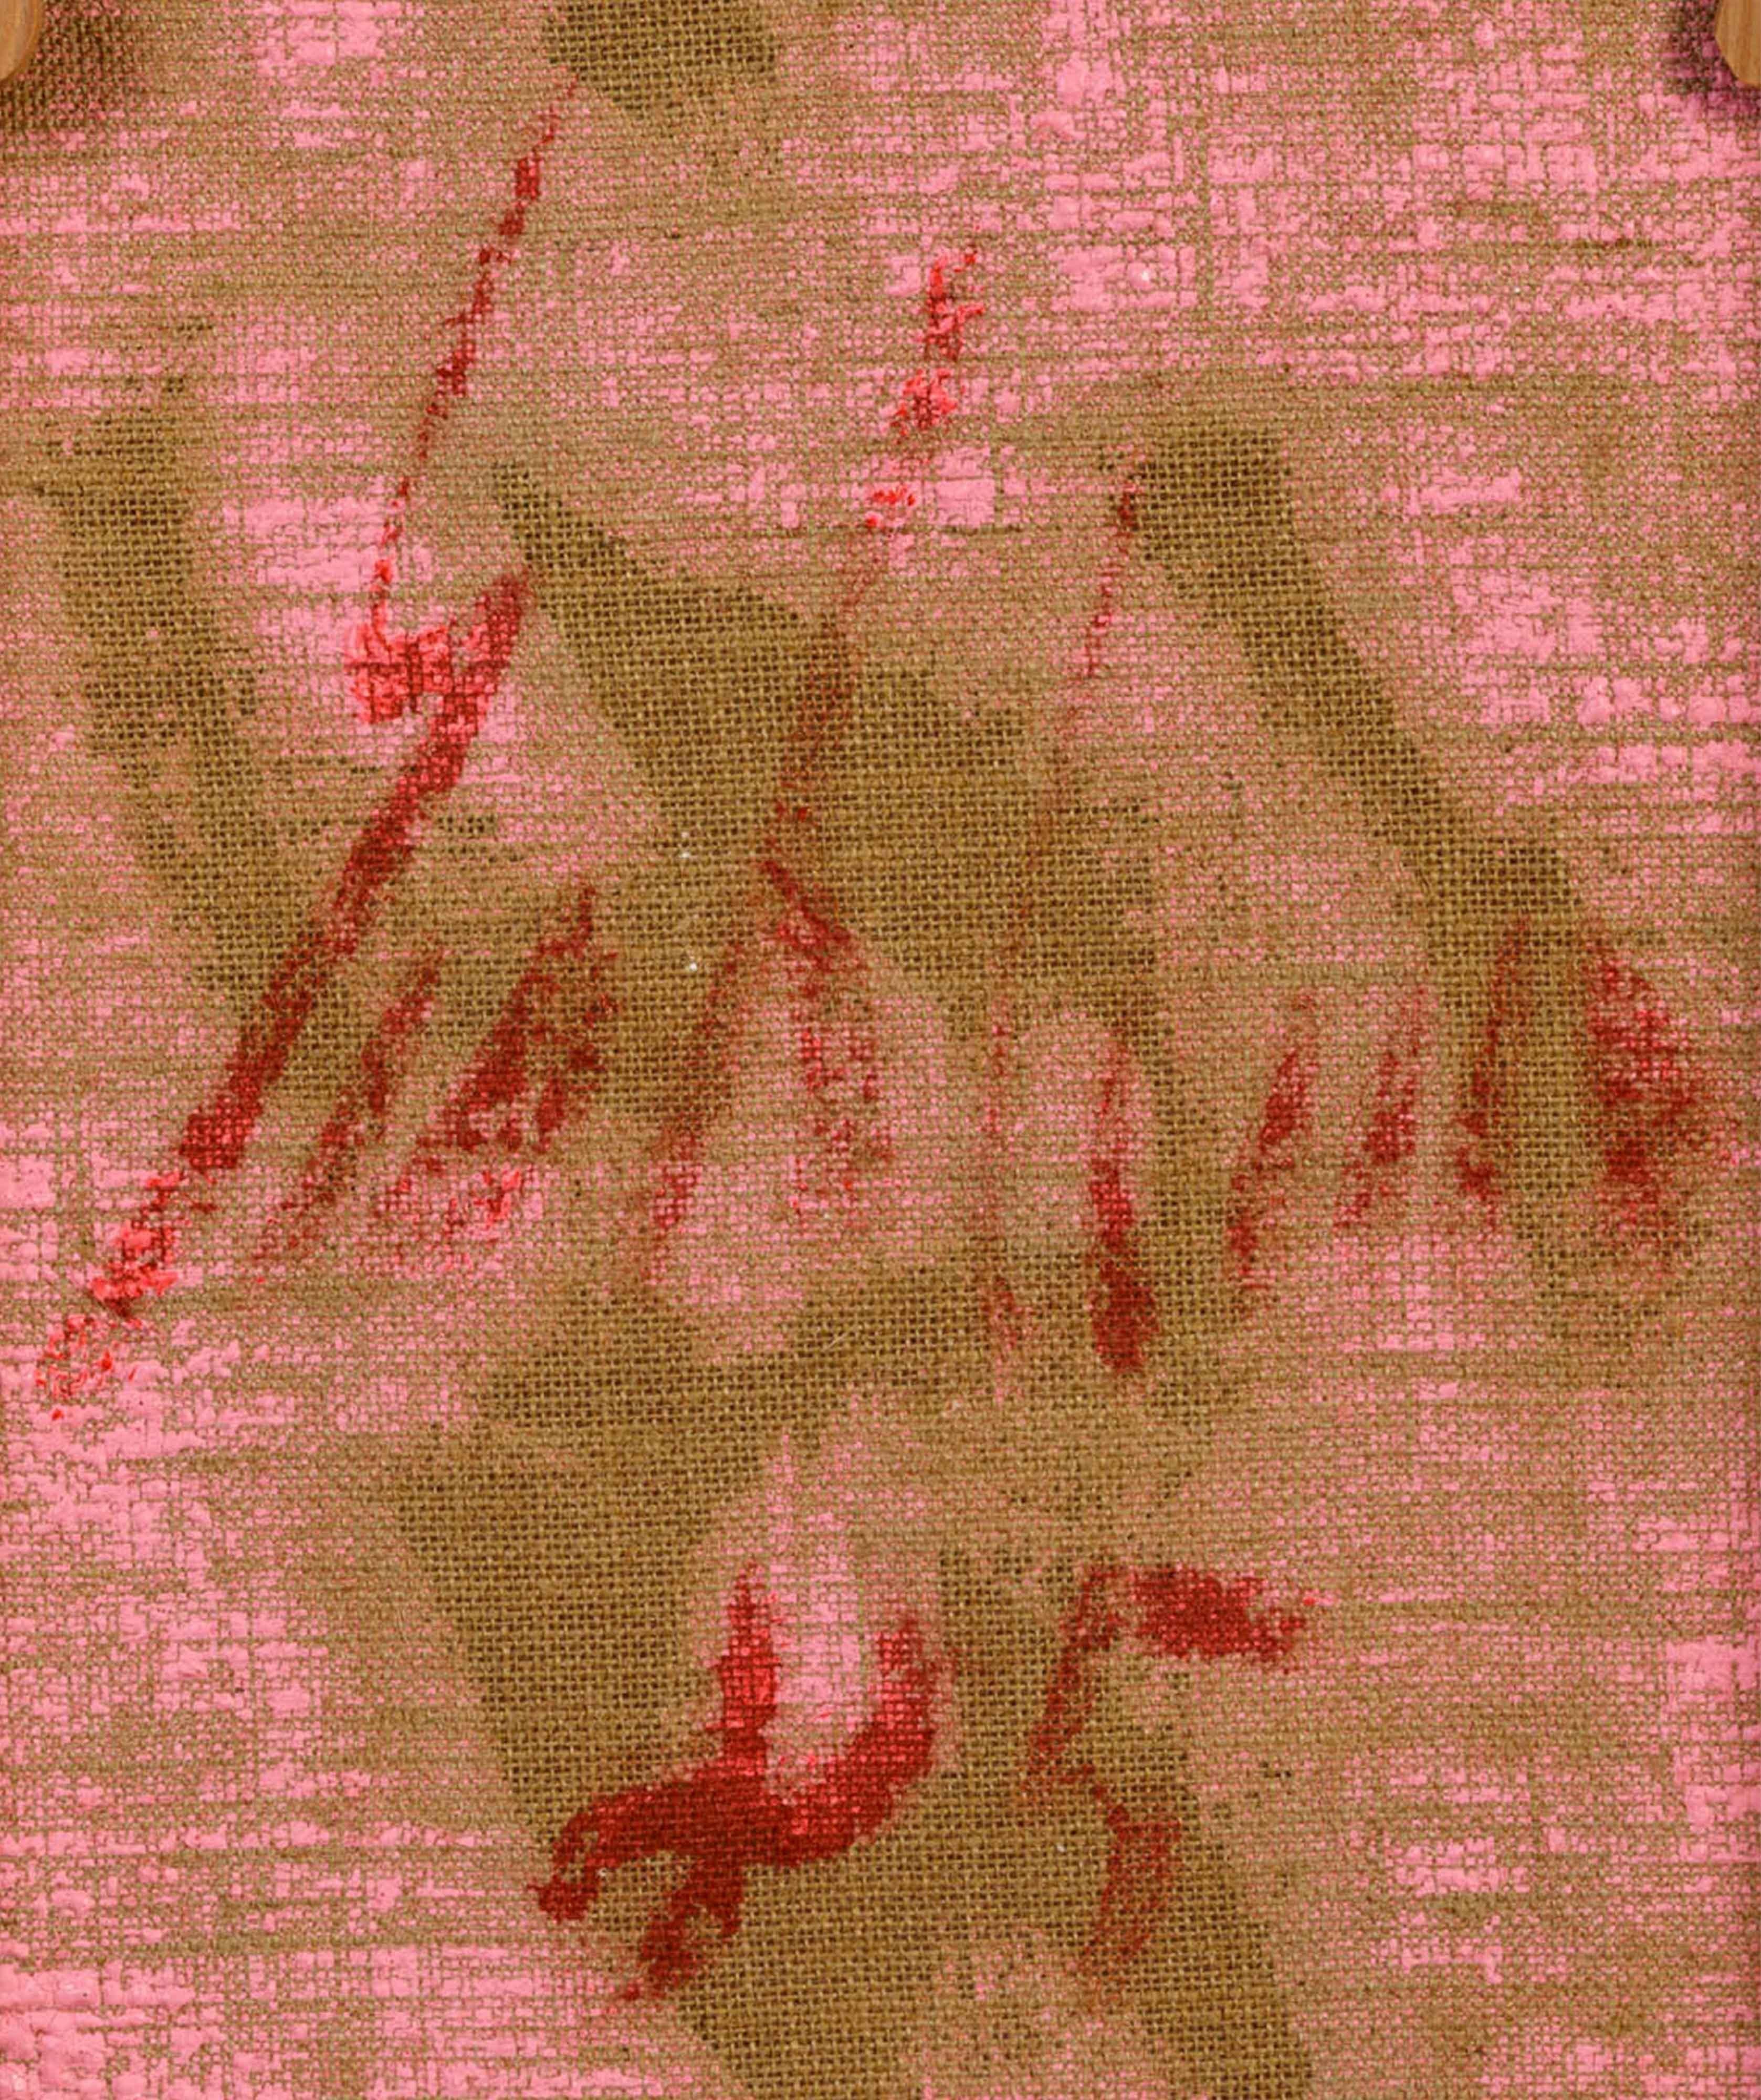 Ein einzigartiges Gemälde von Salvatore Emblema, aus den achtziger Jahren, getönte Erde auf Leinwand. Verso signiert und datiert, verso mit der Nummer des Archivs im Nachlass des Künstlers.

Ausstellungen:

Emblema, Francolino, Scodro, bei Glenda